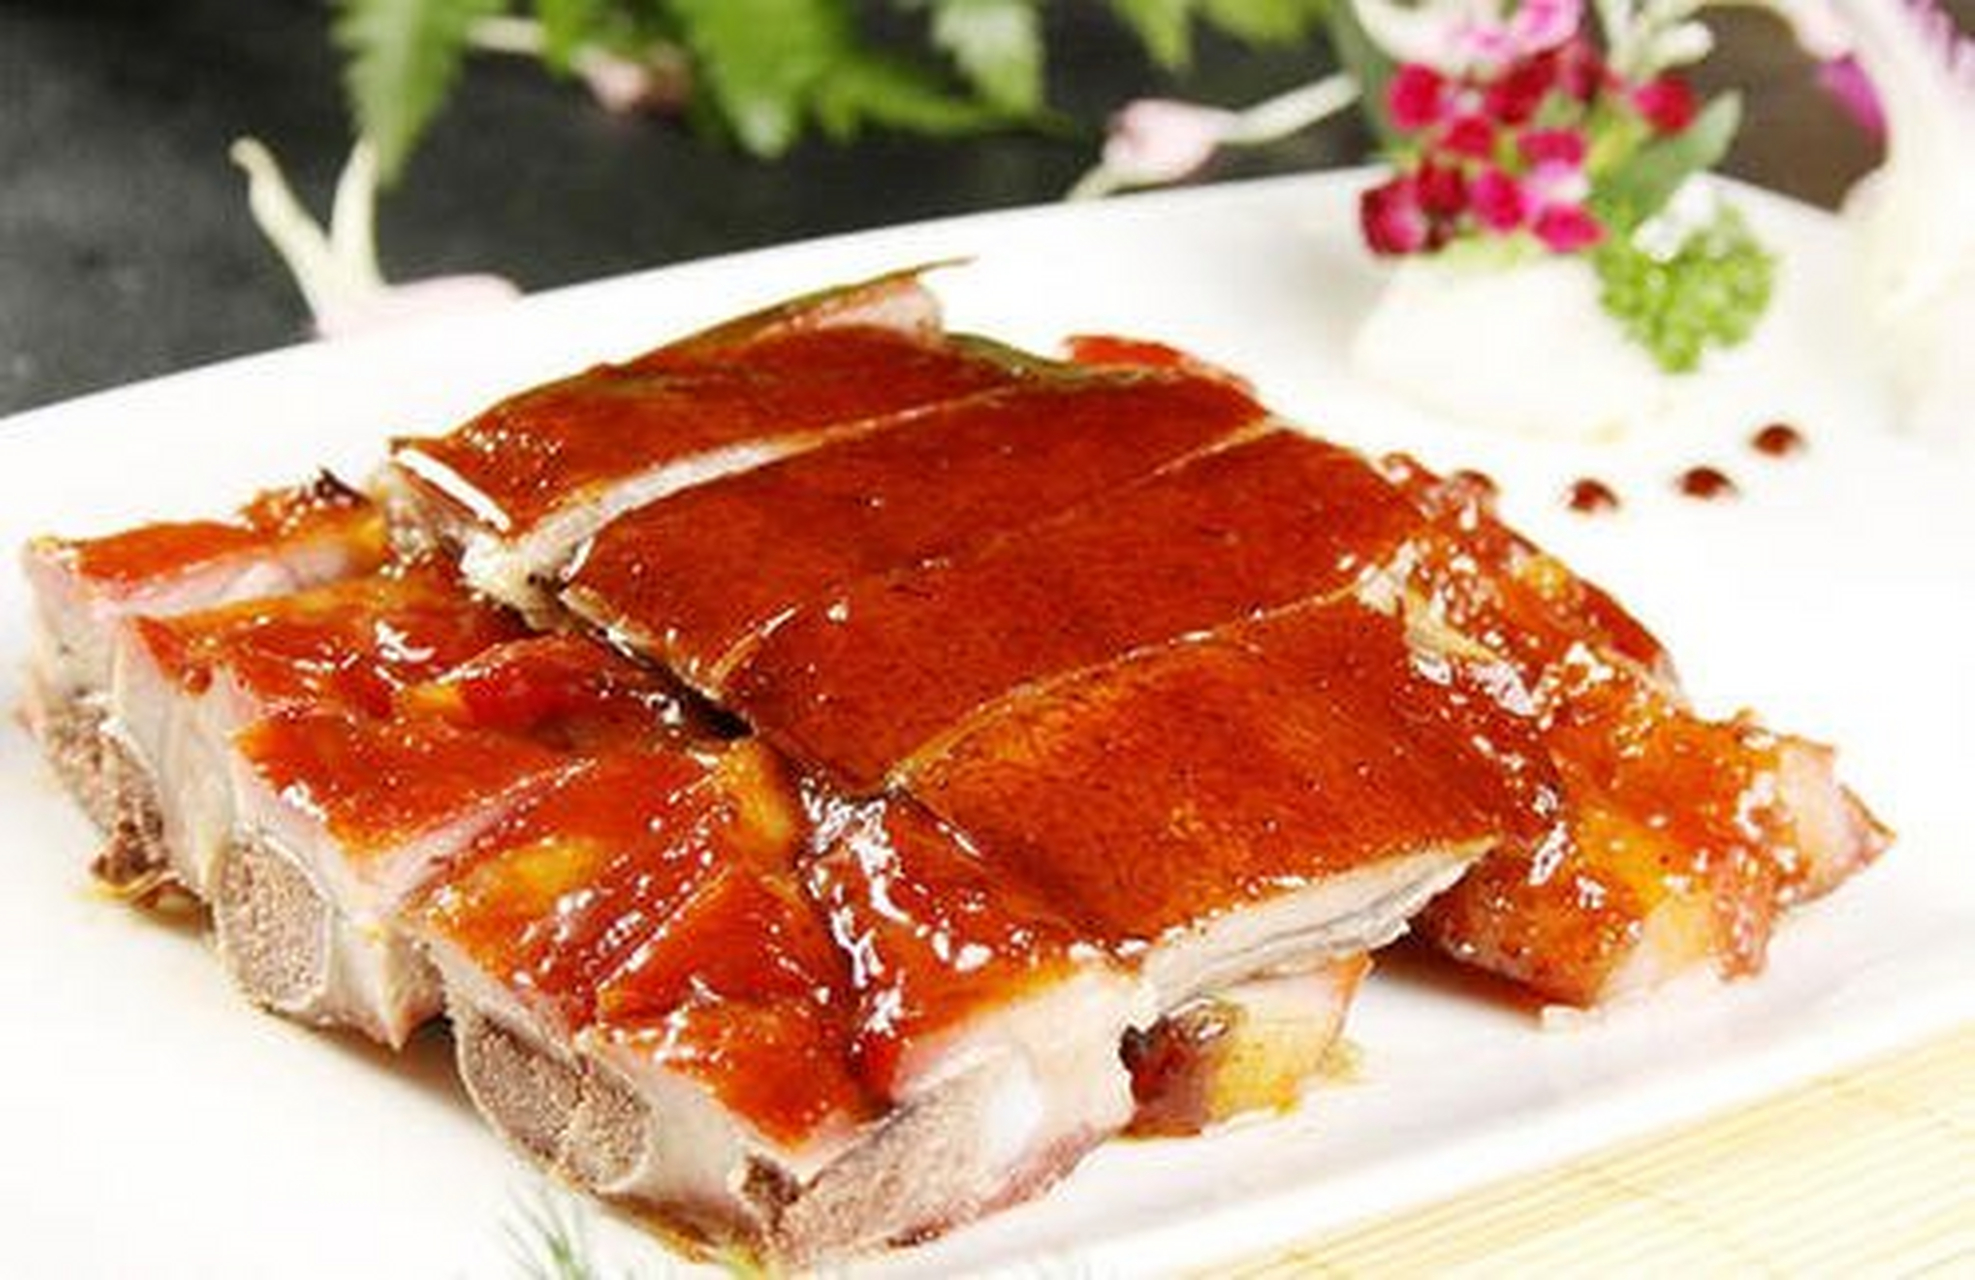 烤乳猪又名小猪烧烤,为独山地方特色食品,该品选取上好乳猪,加以祖传